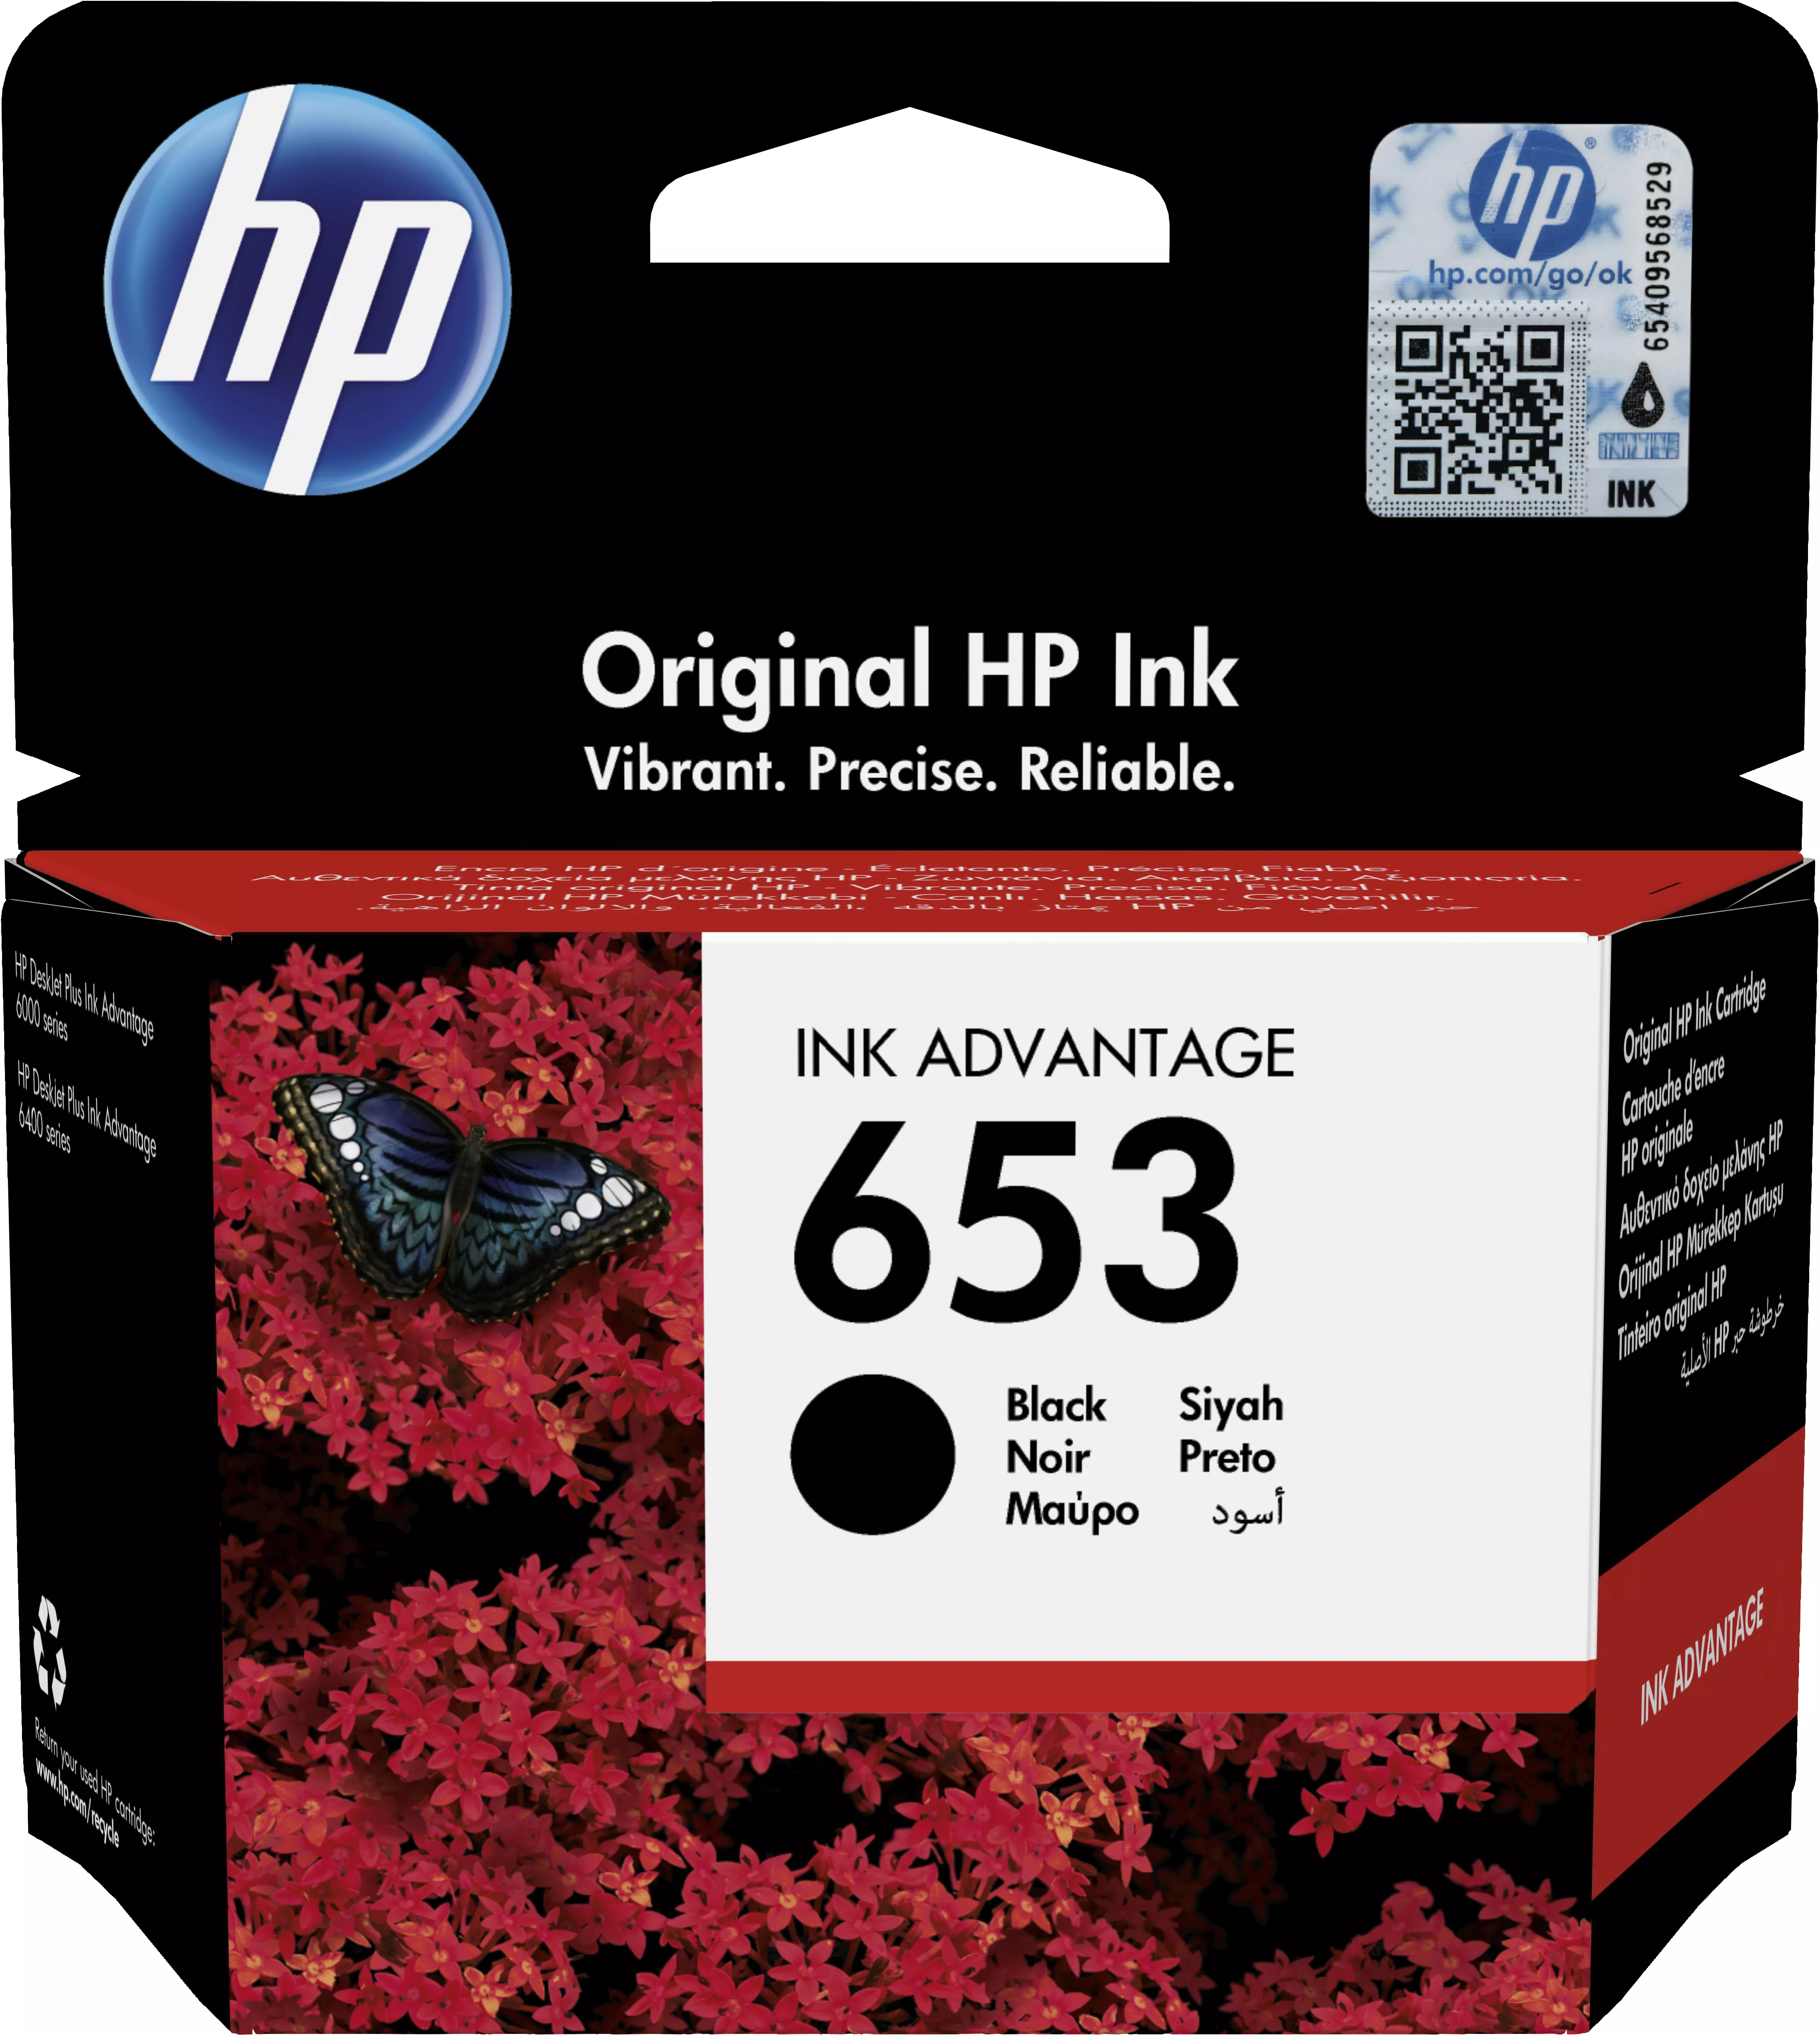 Achat HP 653 Black Original Ink Advantage Cartridge au meilleur prix